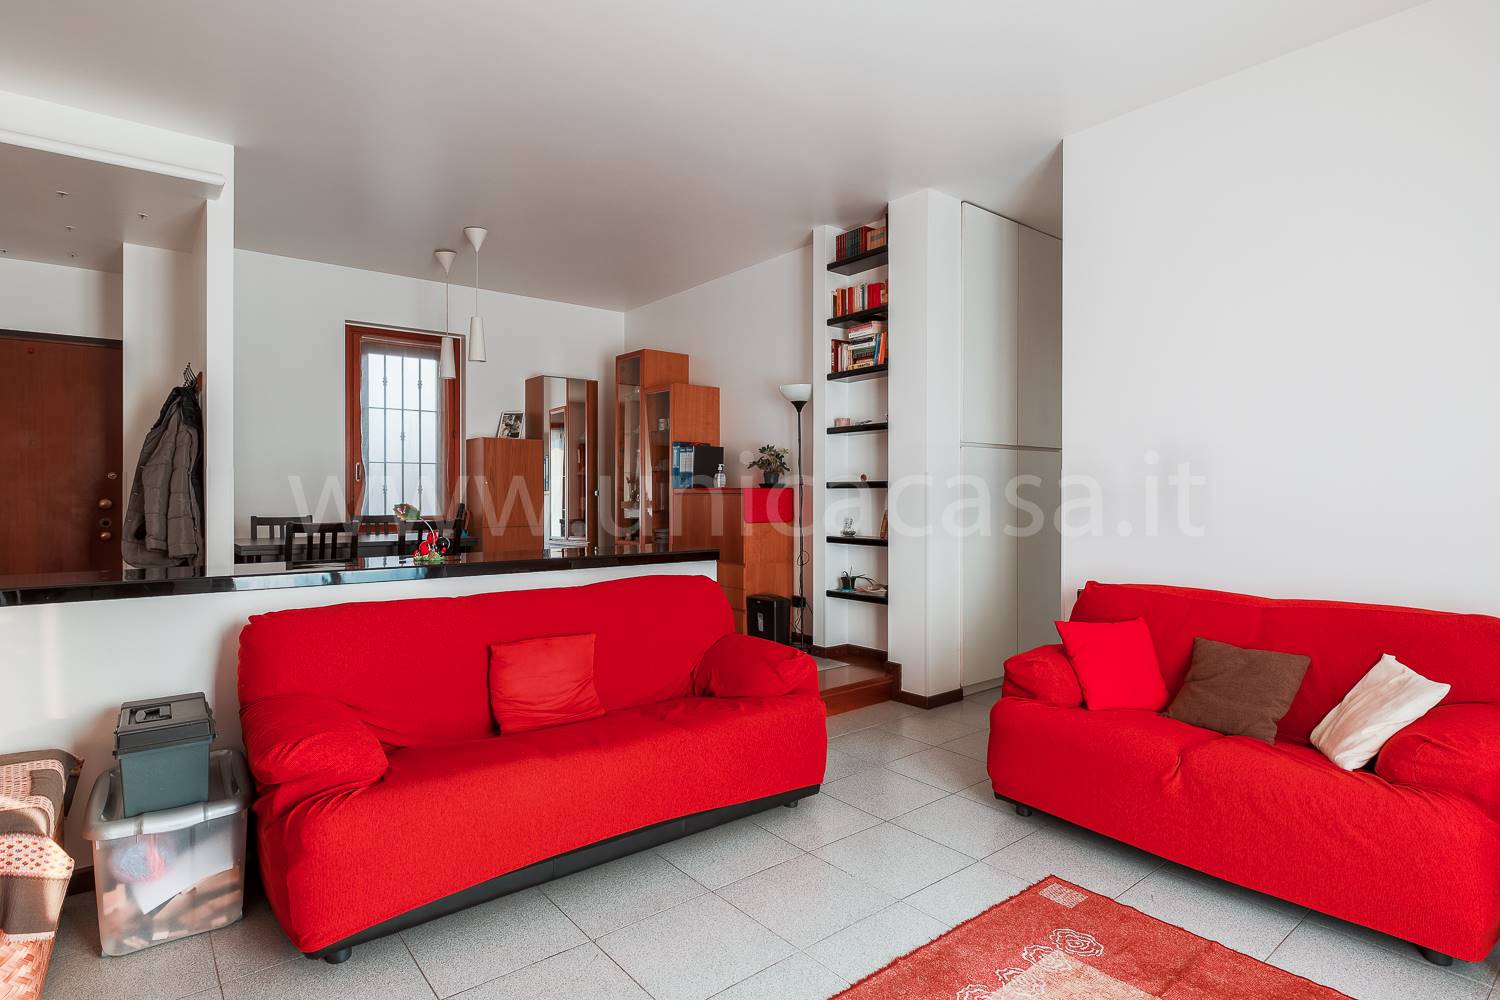 Appartamento in vendita a Pozzo d'Adda, 3 locali, zona Località: BETTOLA, prezzo € 137.000 | PortaleAgenzieImmobiliari.it